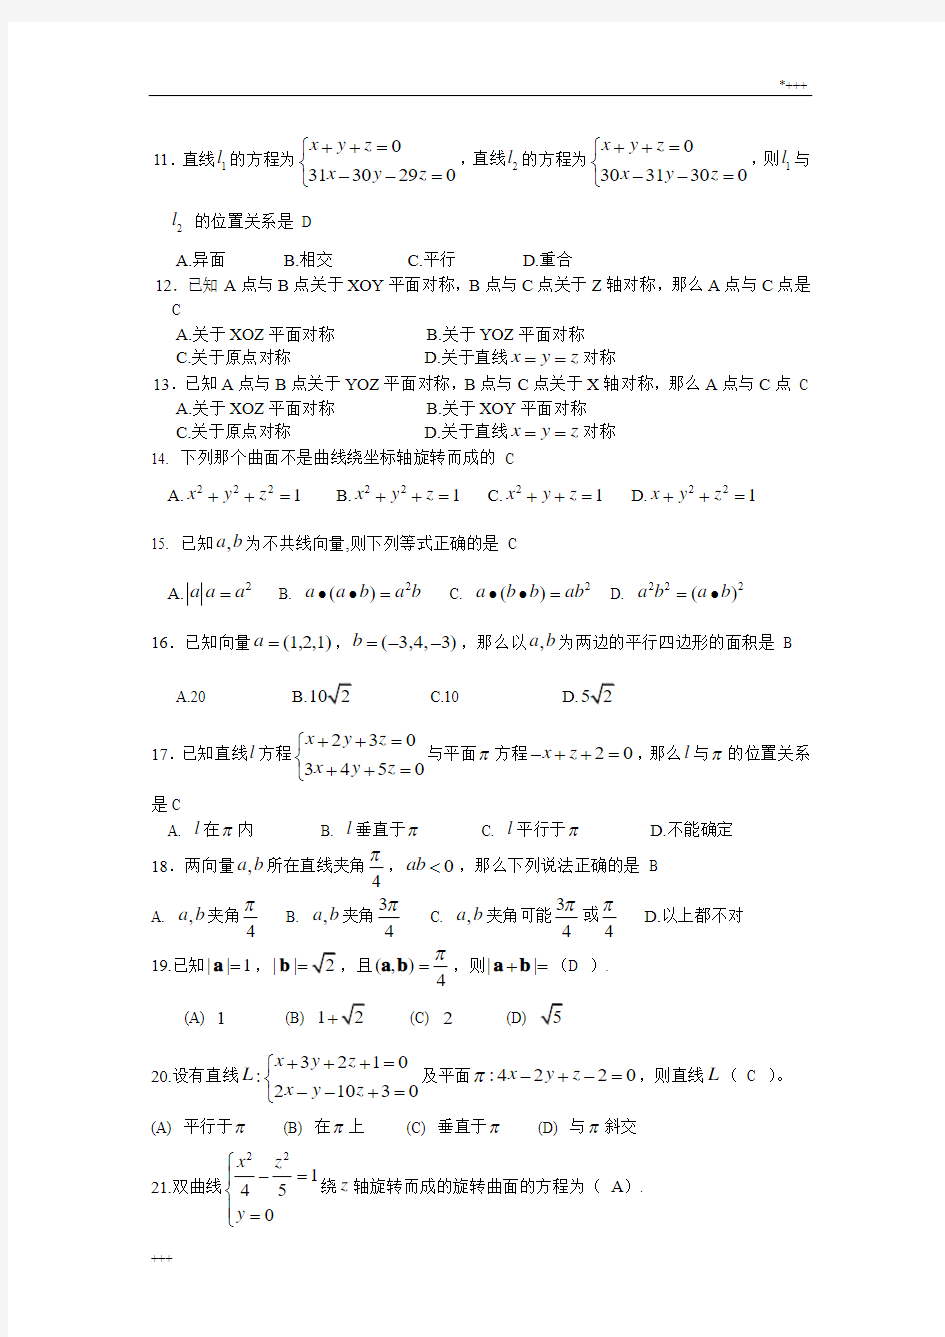 向量代数与空间解析几何-期末复习题-高等数学下册